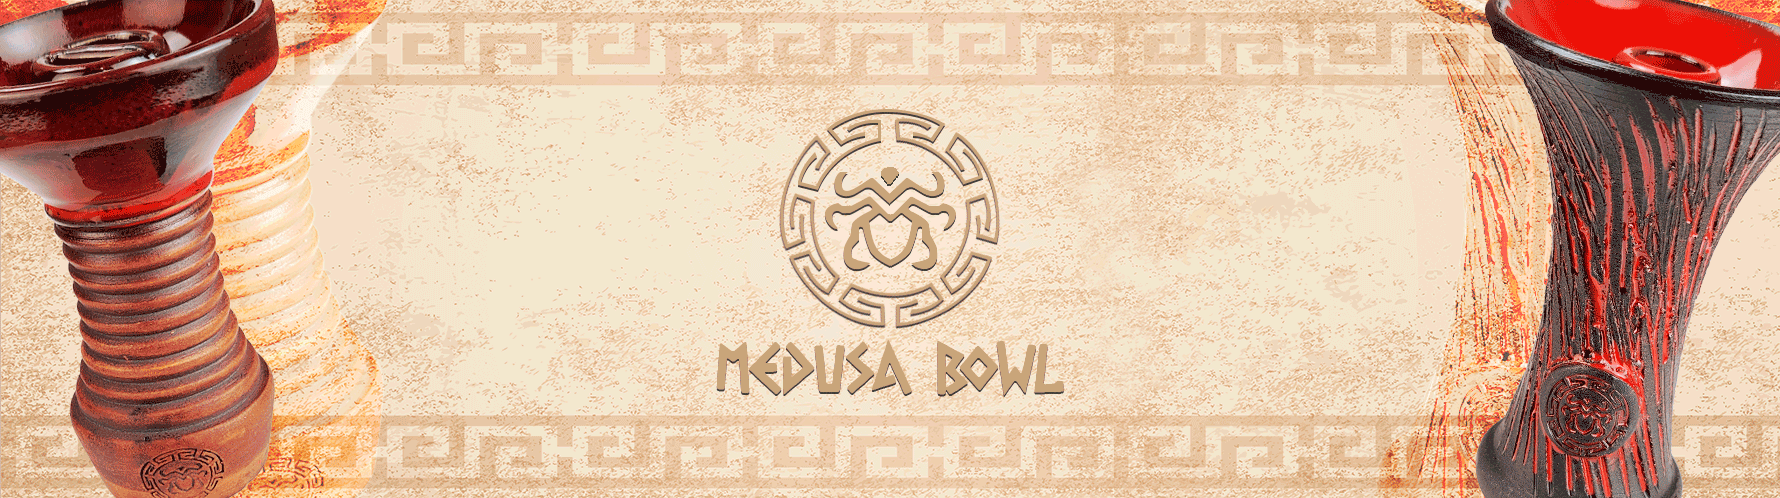 Rosh Medusa Bowl